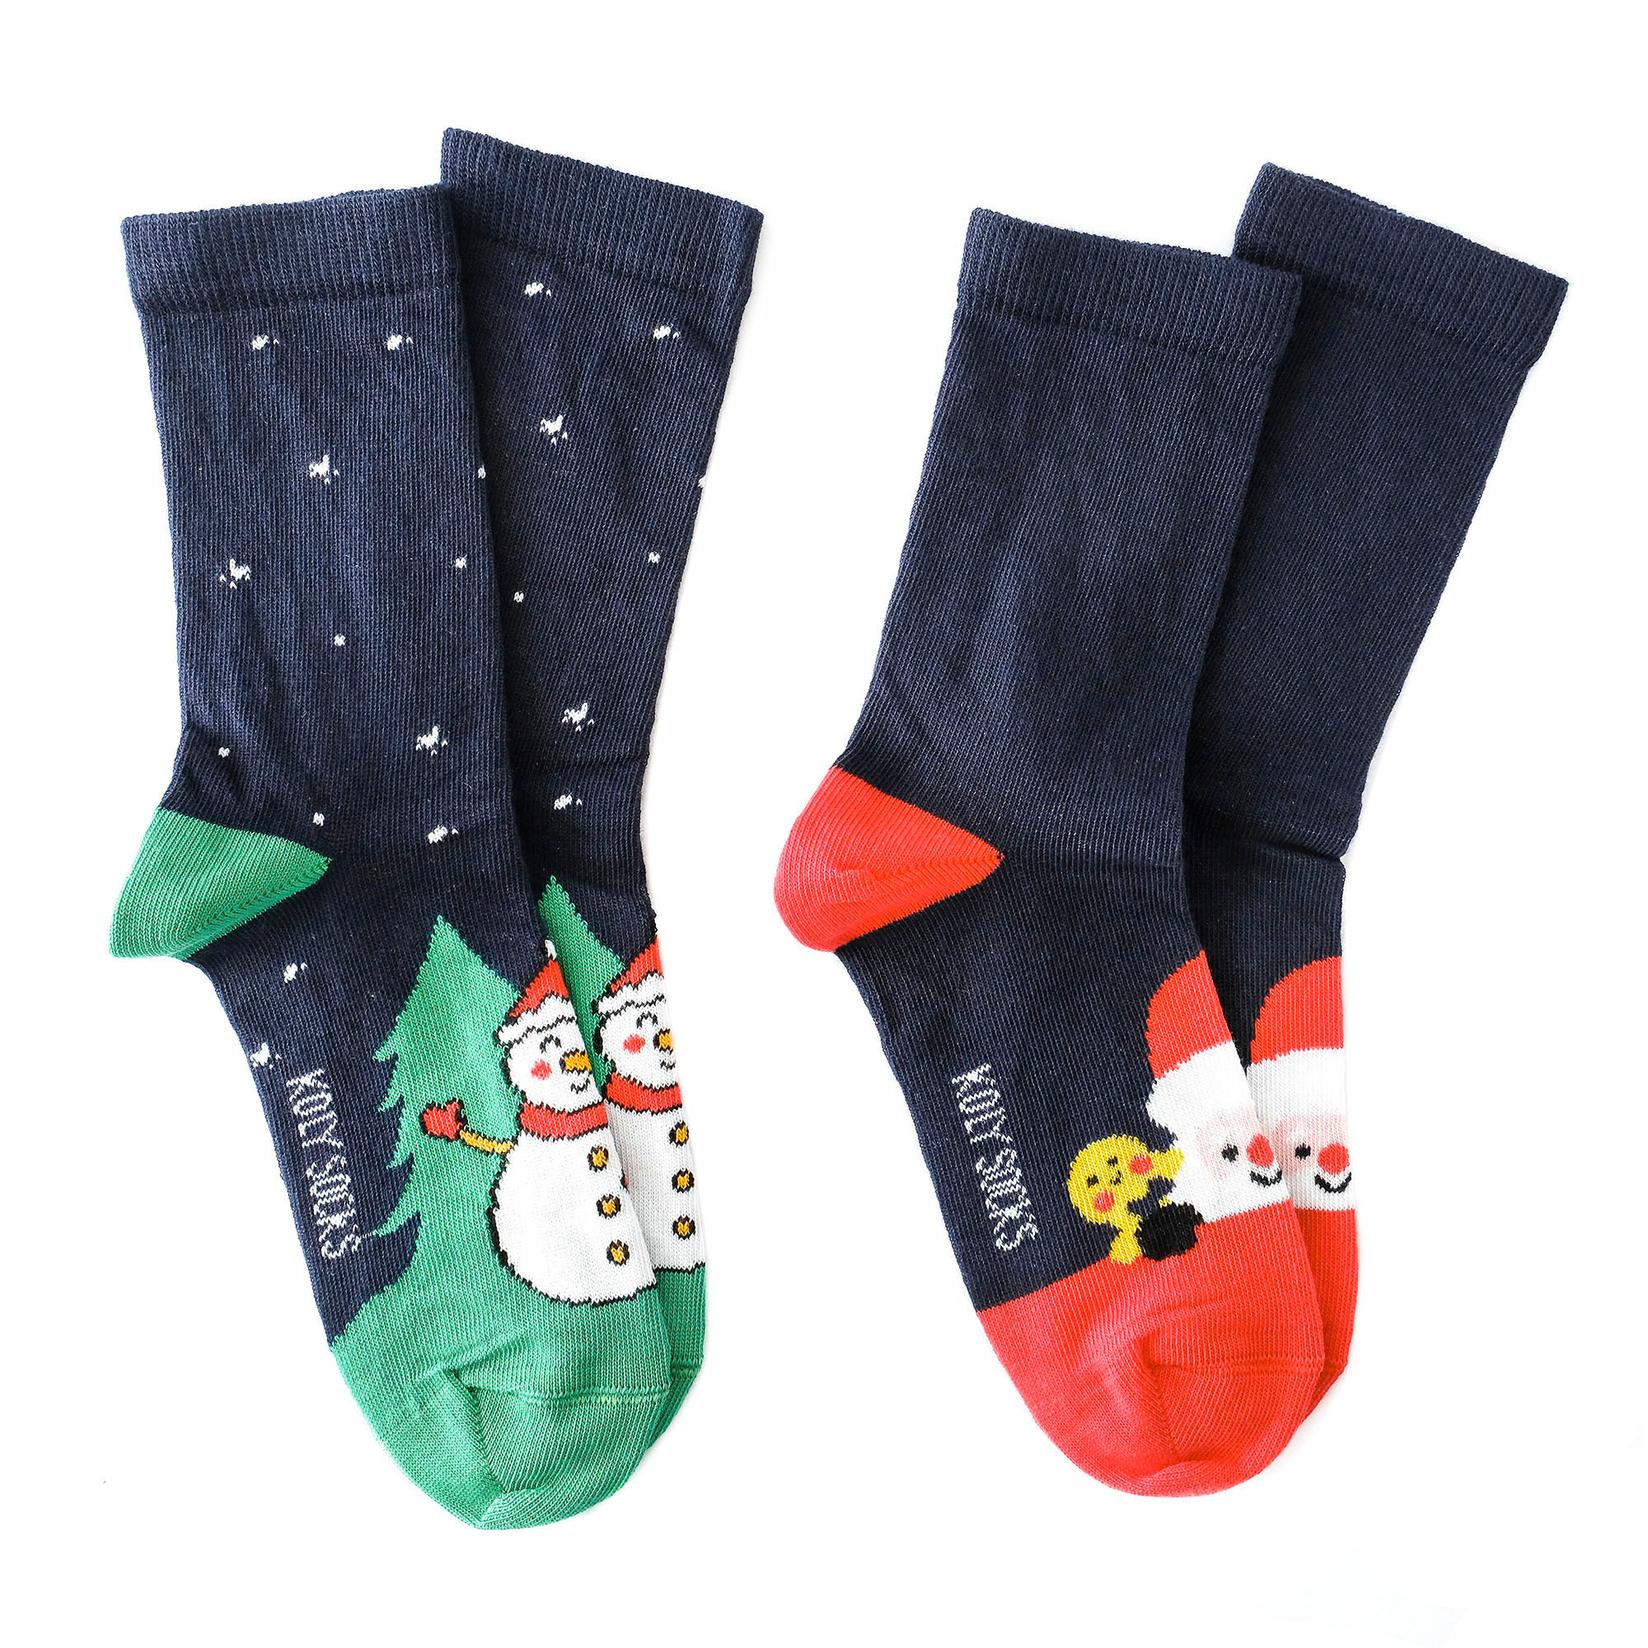 Selected image for KOLY SOCKS Set novogodišnjih čarapa za decu 2/1 teget